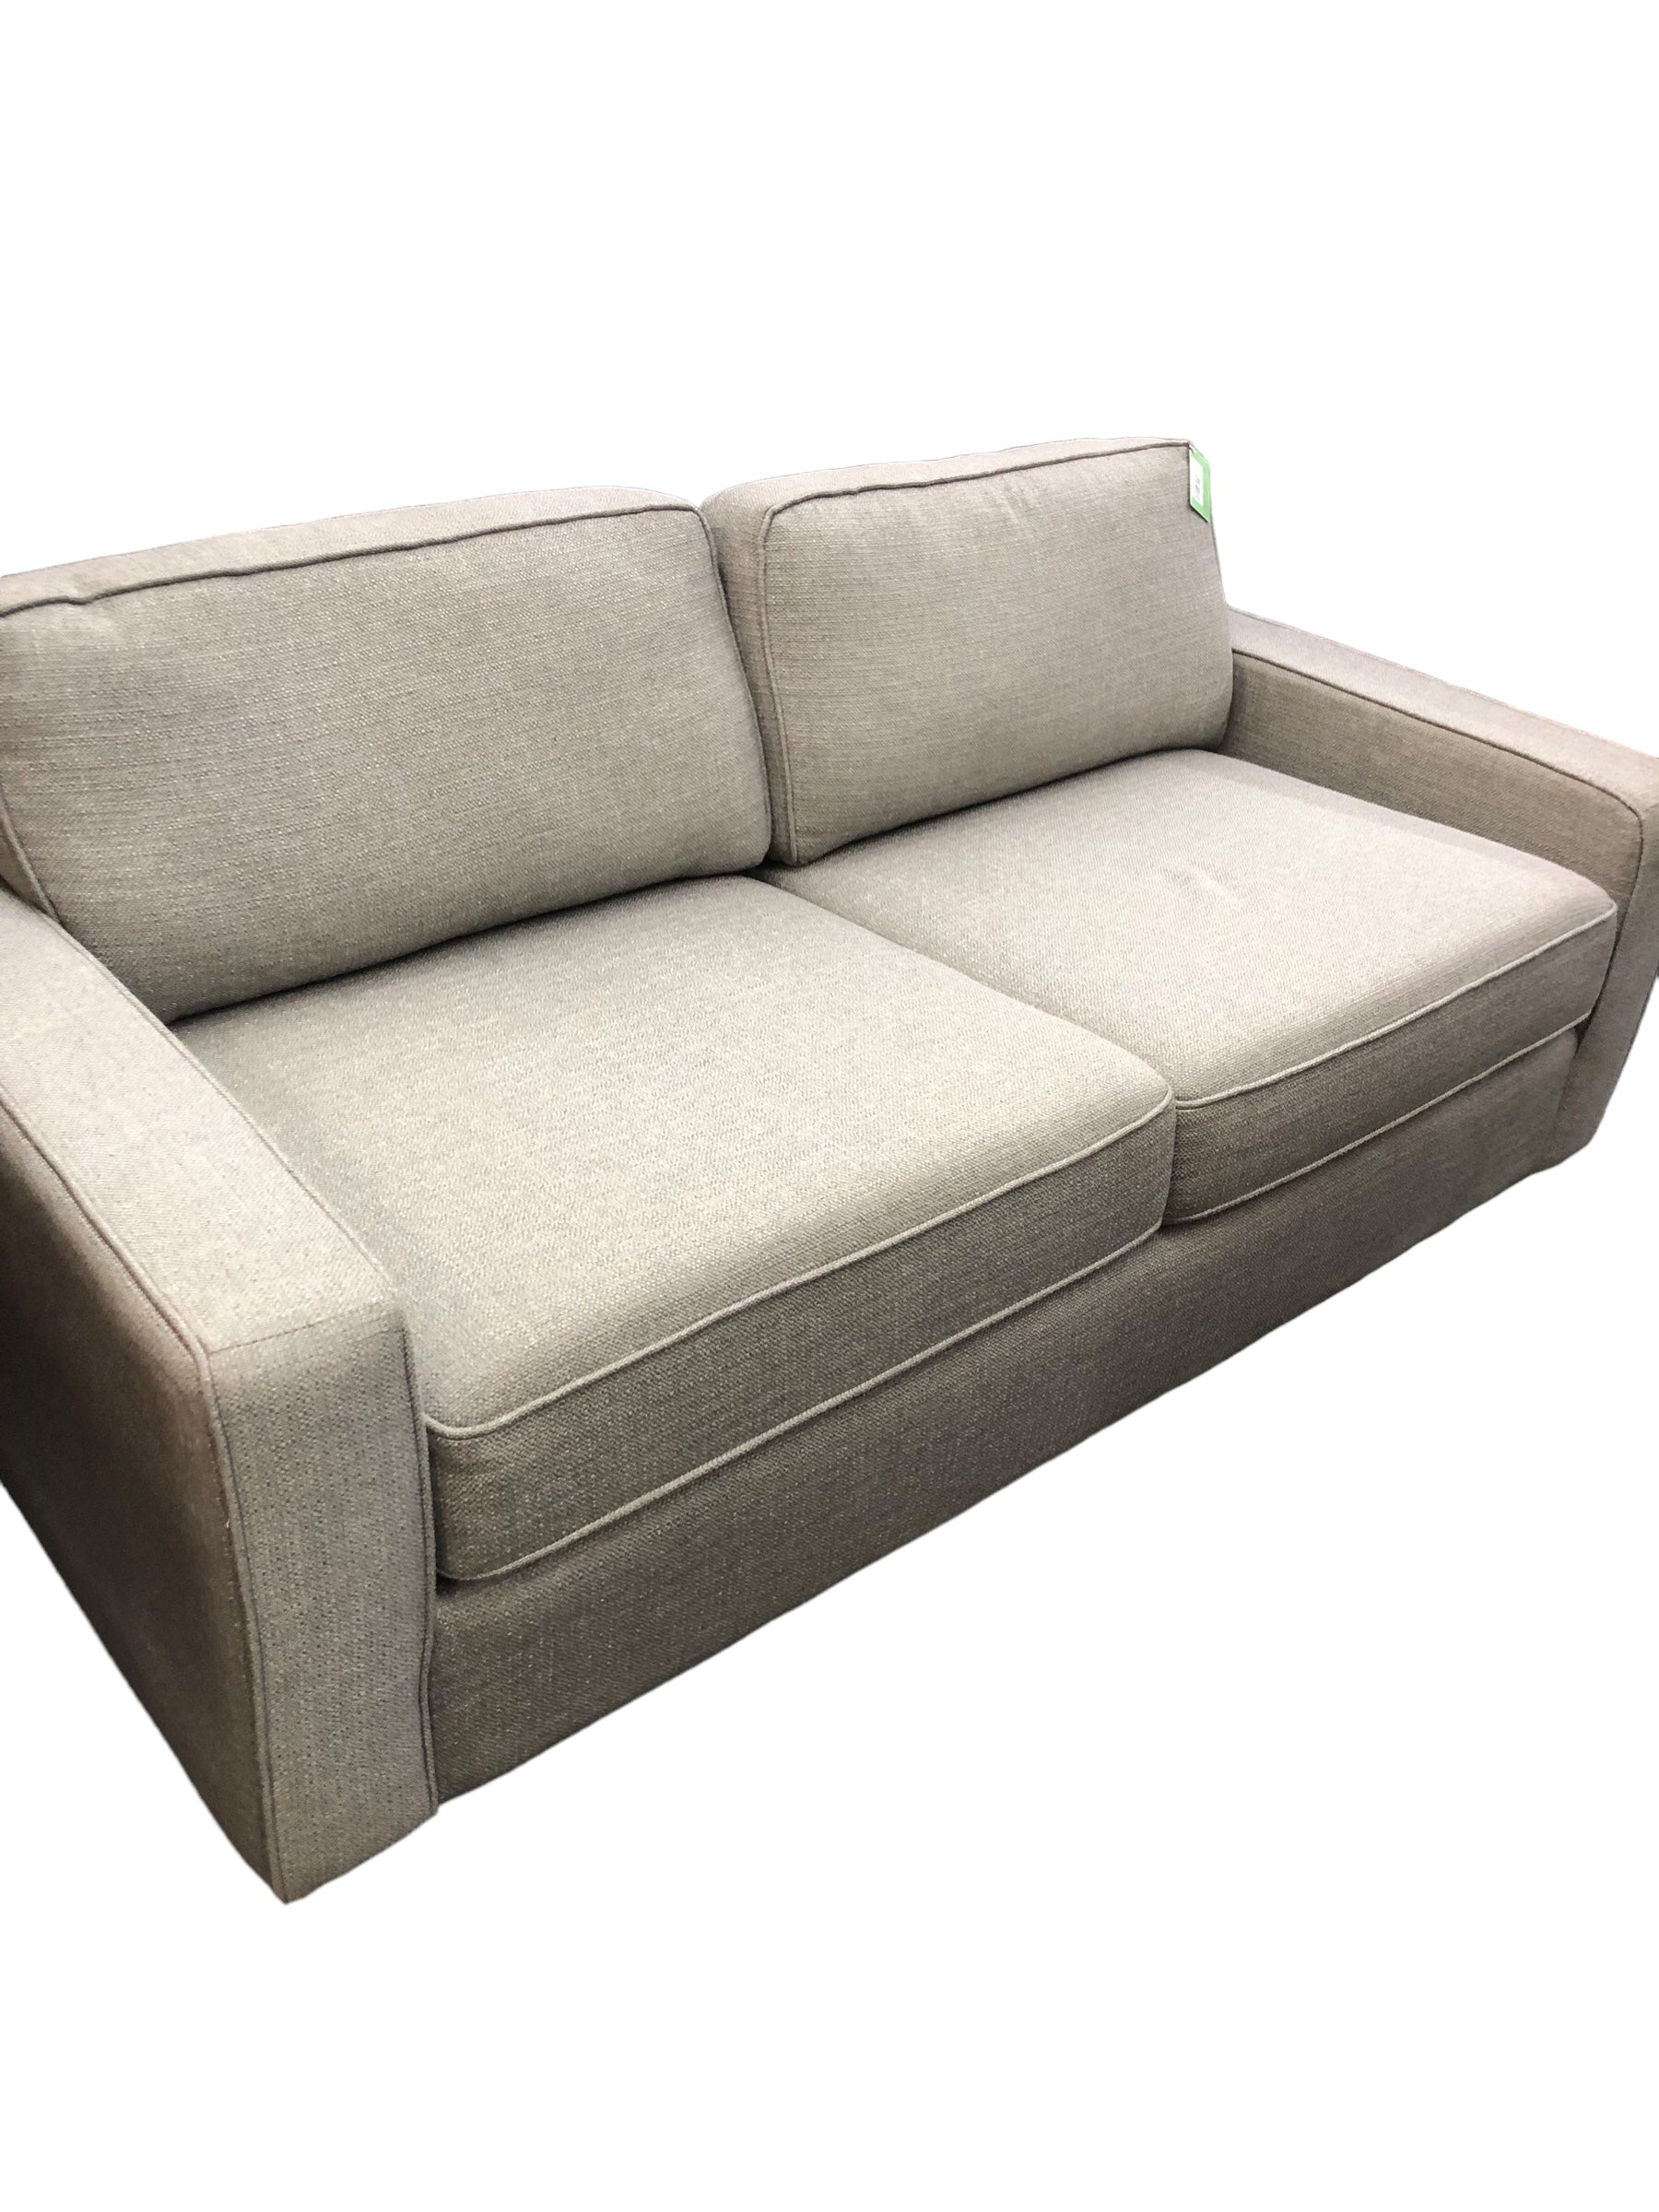 Soft Grey Tweed Sofa